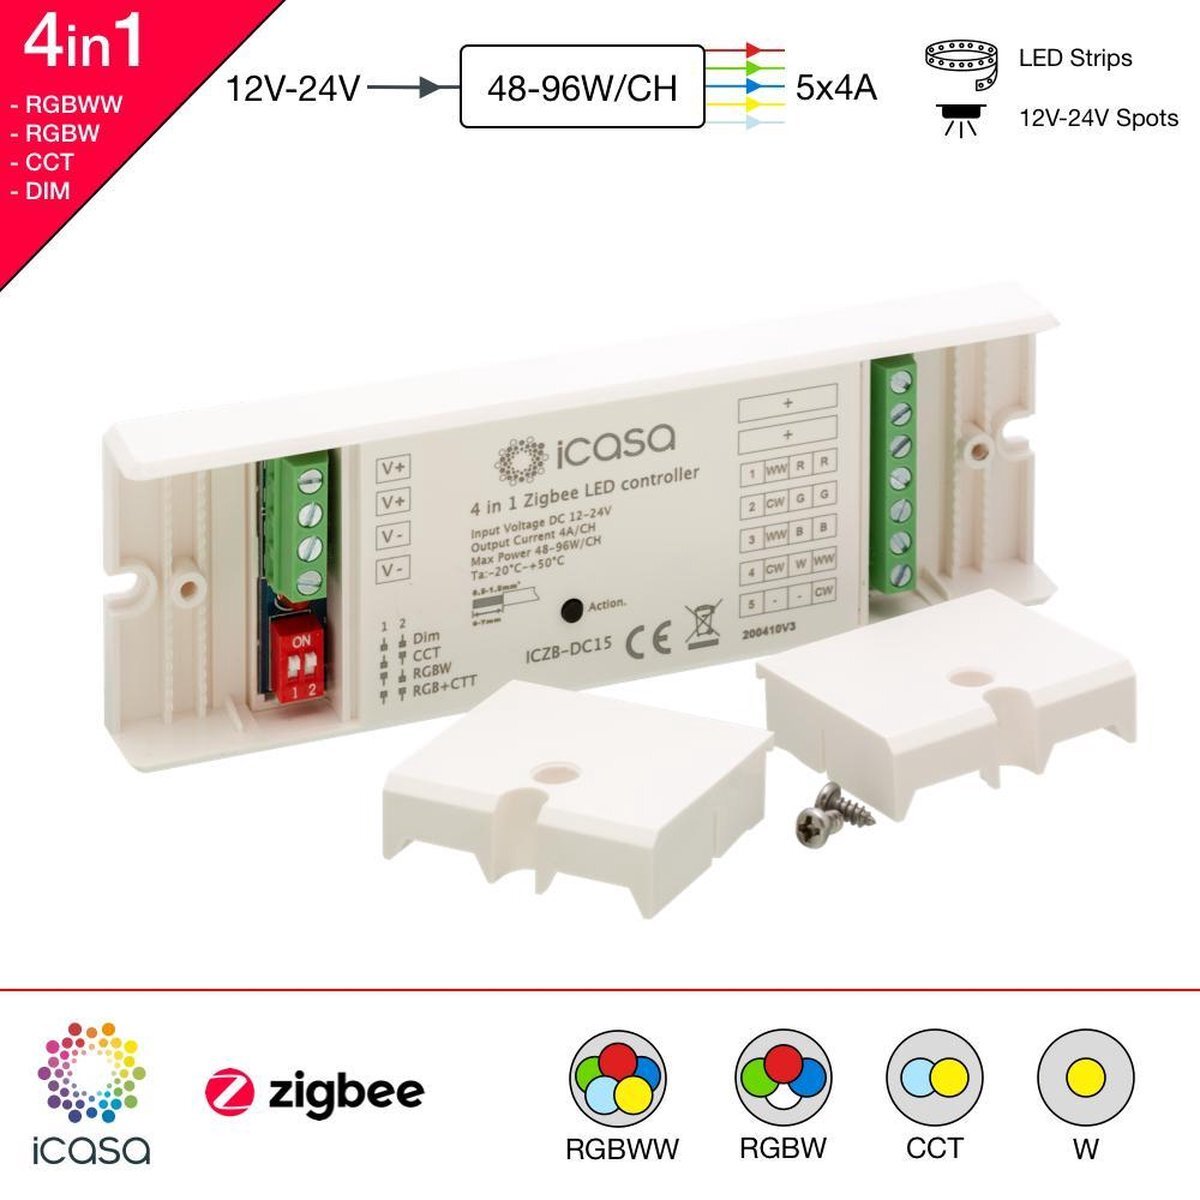 iCasa 4-in-1 Zigbee 3.0 LED controller - dimmer - 12-24V - Dim, CCT, RGB, RGBW, RGBWW